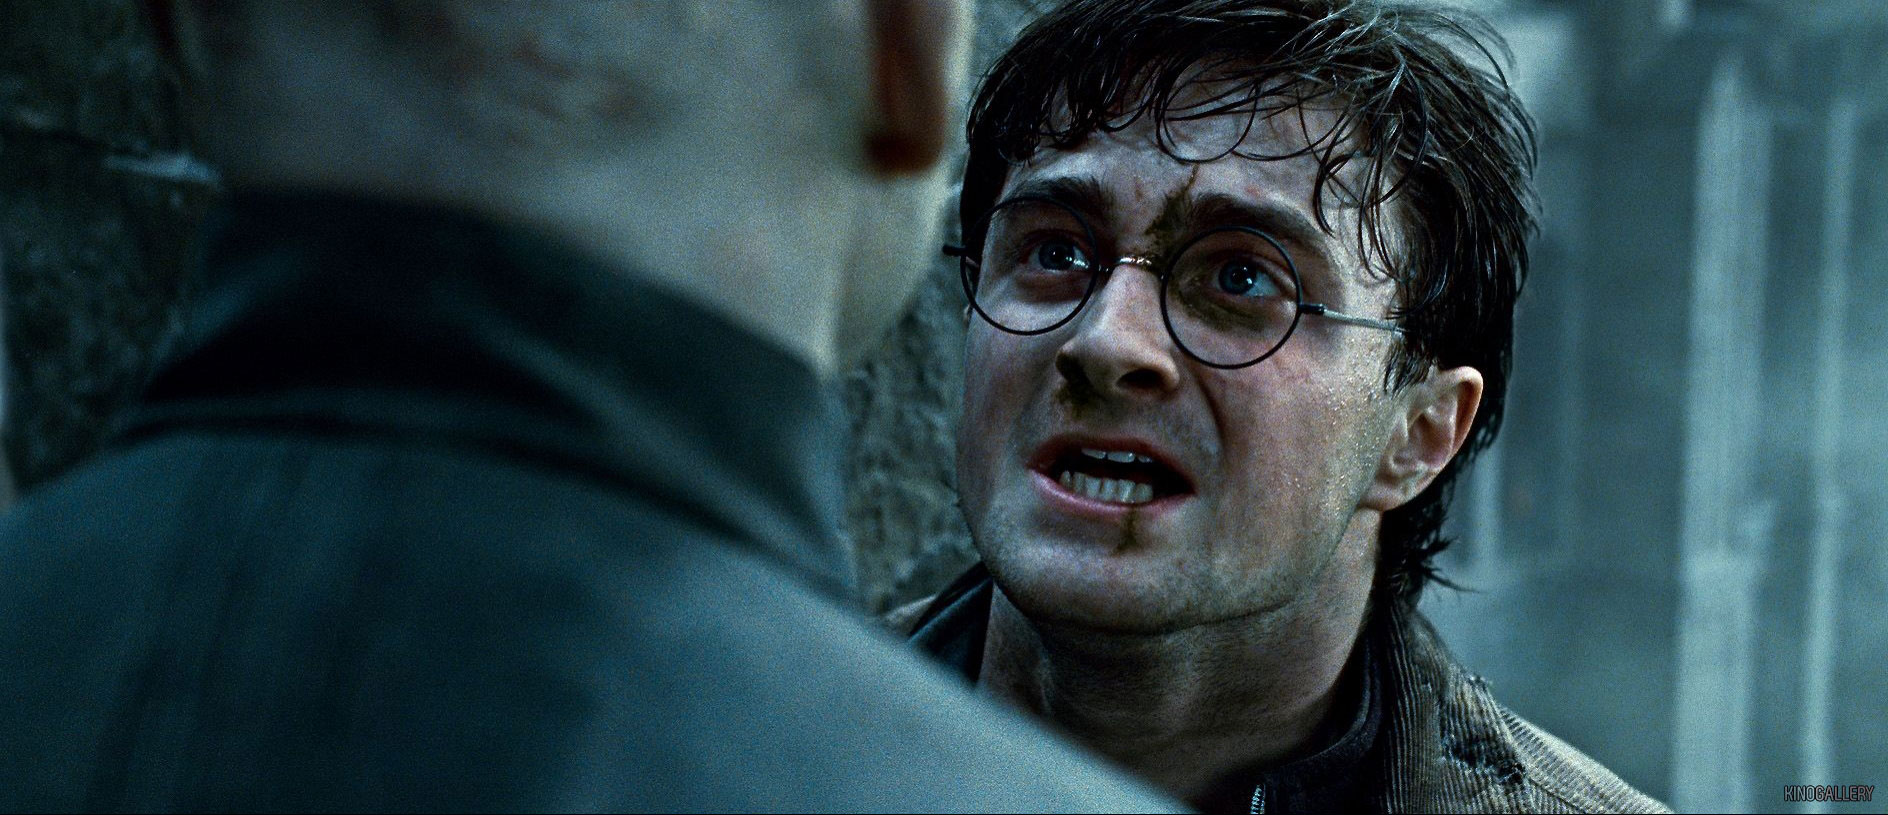 Cena do filme Harry Potter e as Relíquias da Morte: Parte 2. Na cena, vemos Harry, personagem de Daniel Radcliffe, um homem branco que usa óculos redondos, sujo de terra, olhando Voldemort, personagem de Ralph Fiennes, que está de costas. Eles estão à beira de um precipício.